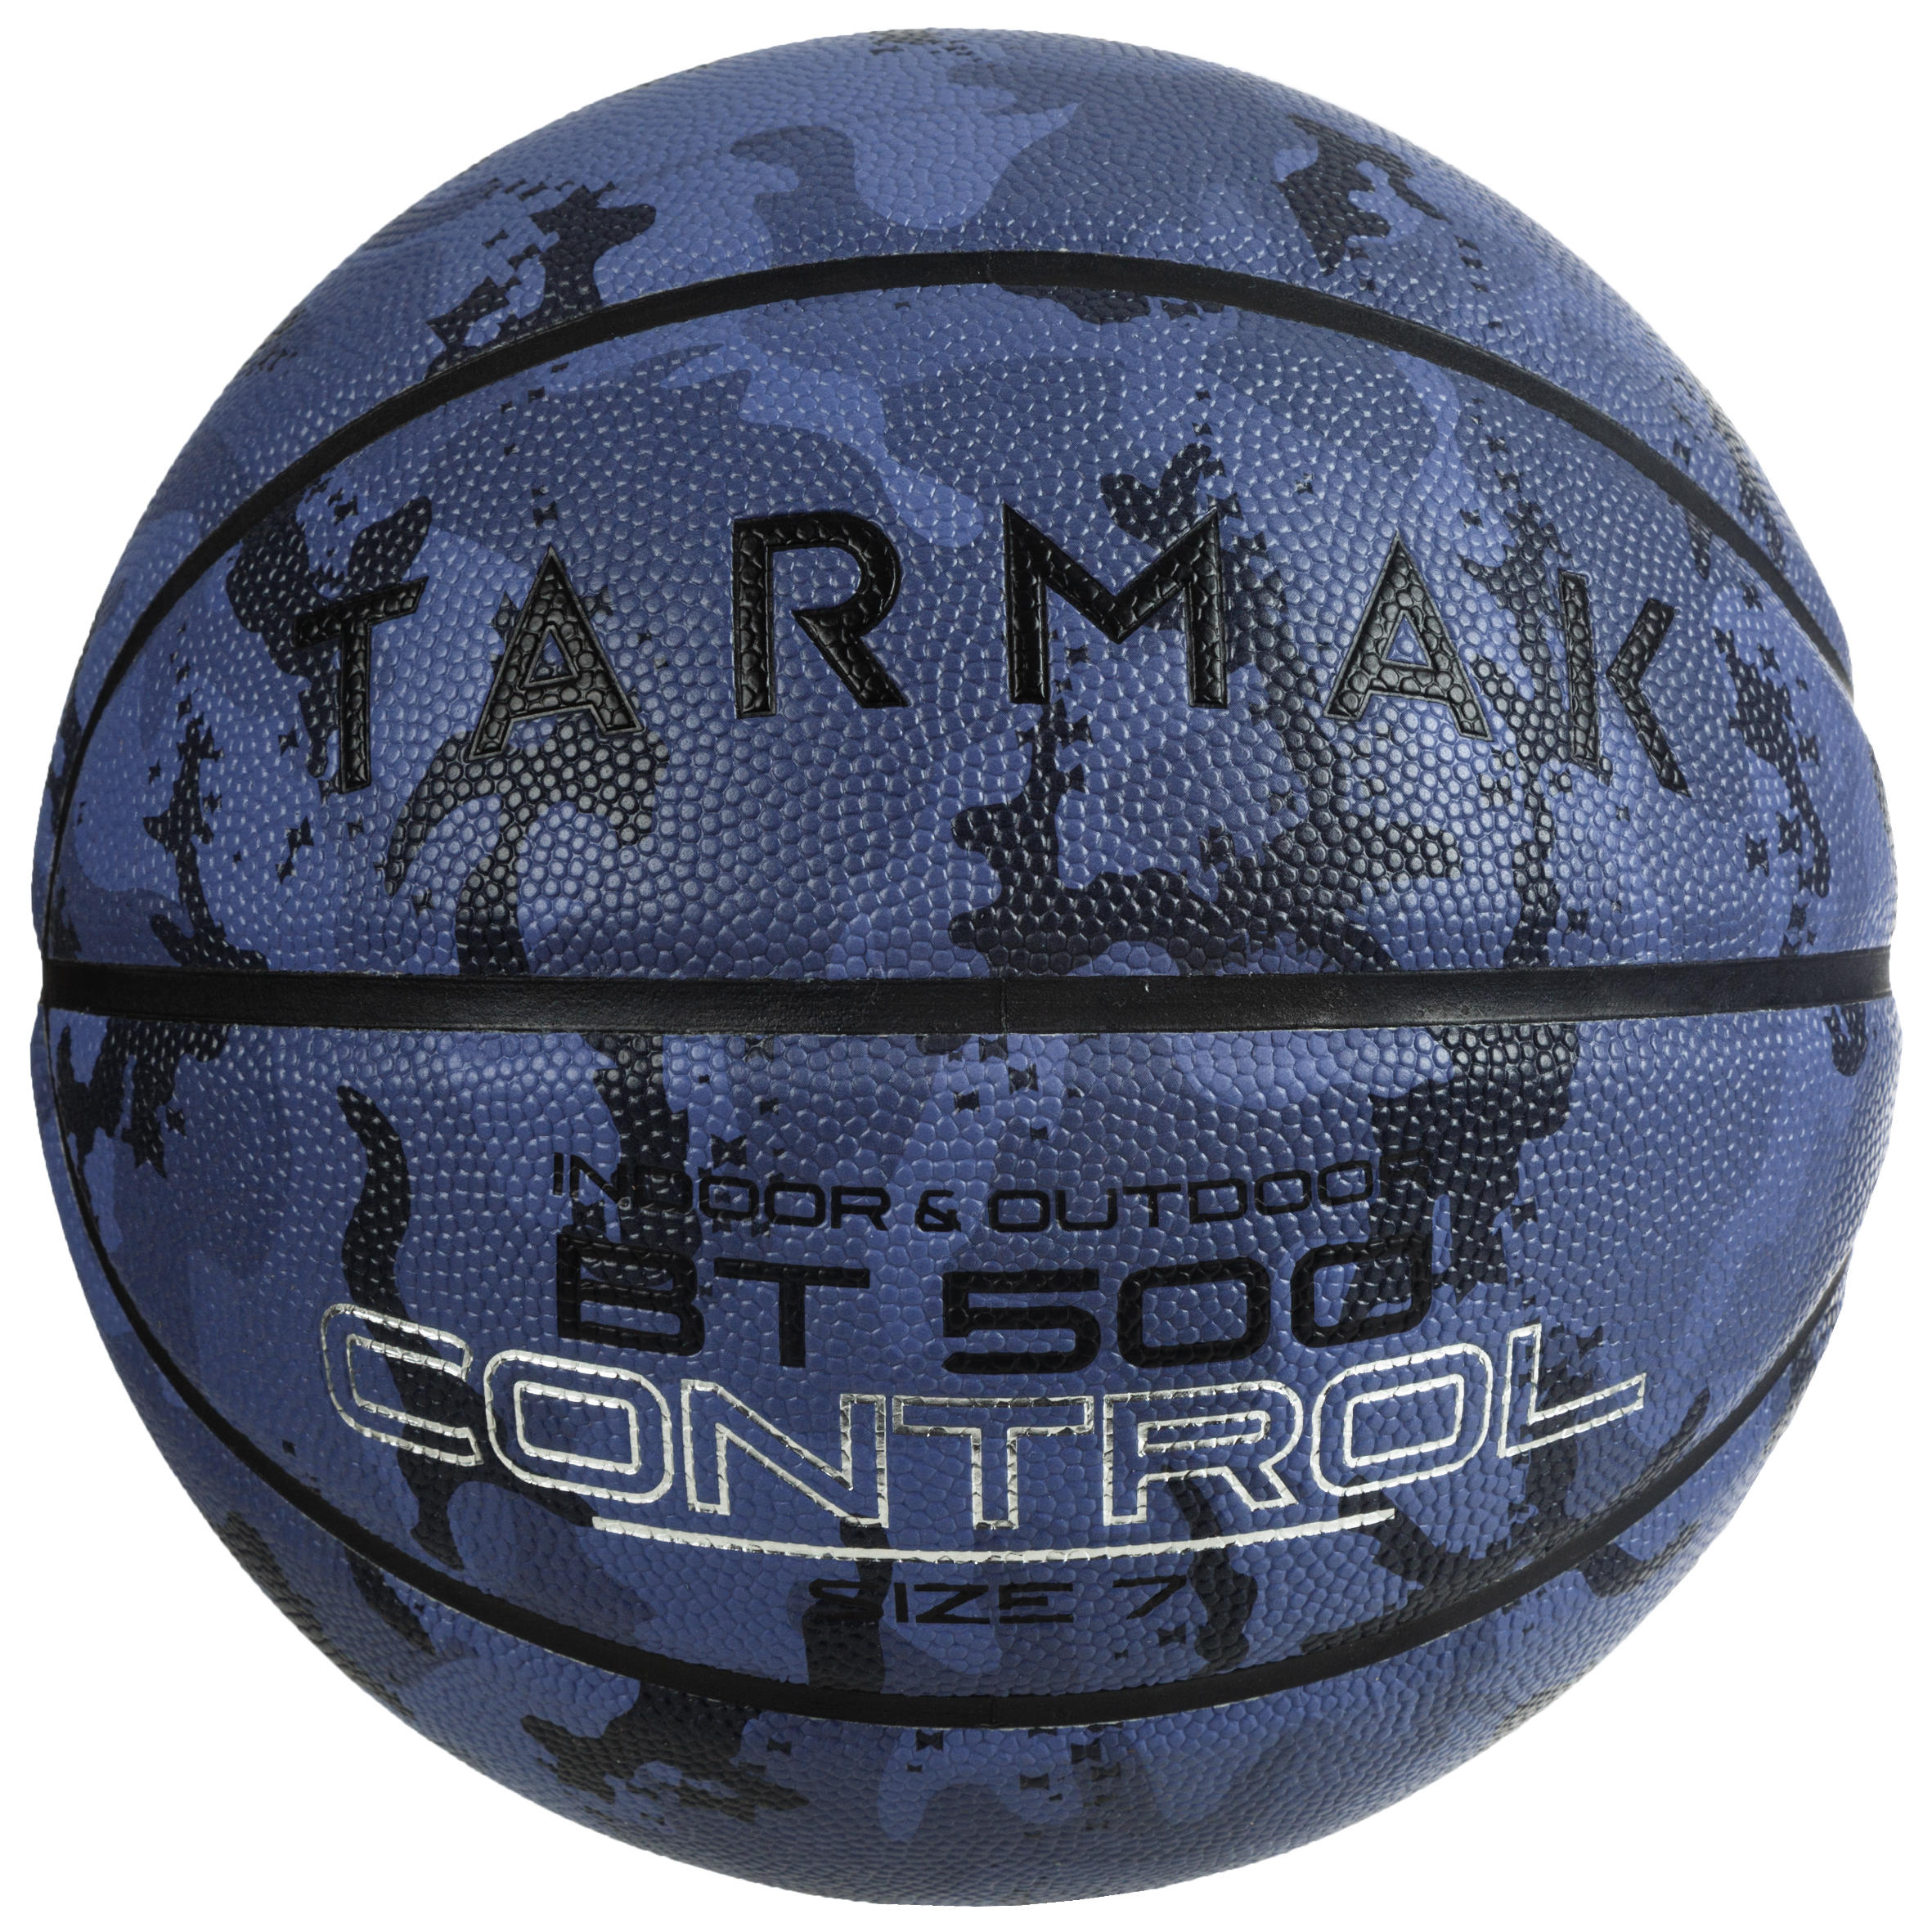 ลูกบาสเก็ตบอลเบอร์ 7 รุ่น BT500 (สีน้ำเงินลายพราง) basketball บาสเก็ตบอล ราคาถูกที่สุด